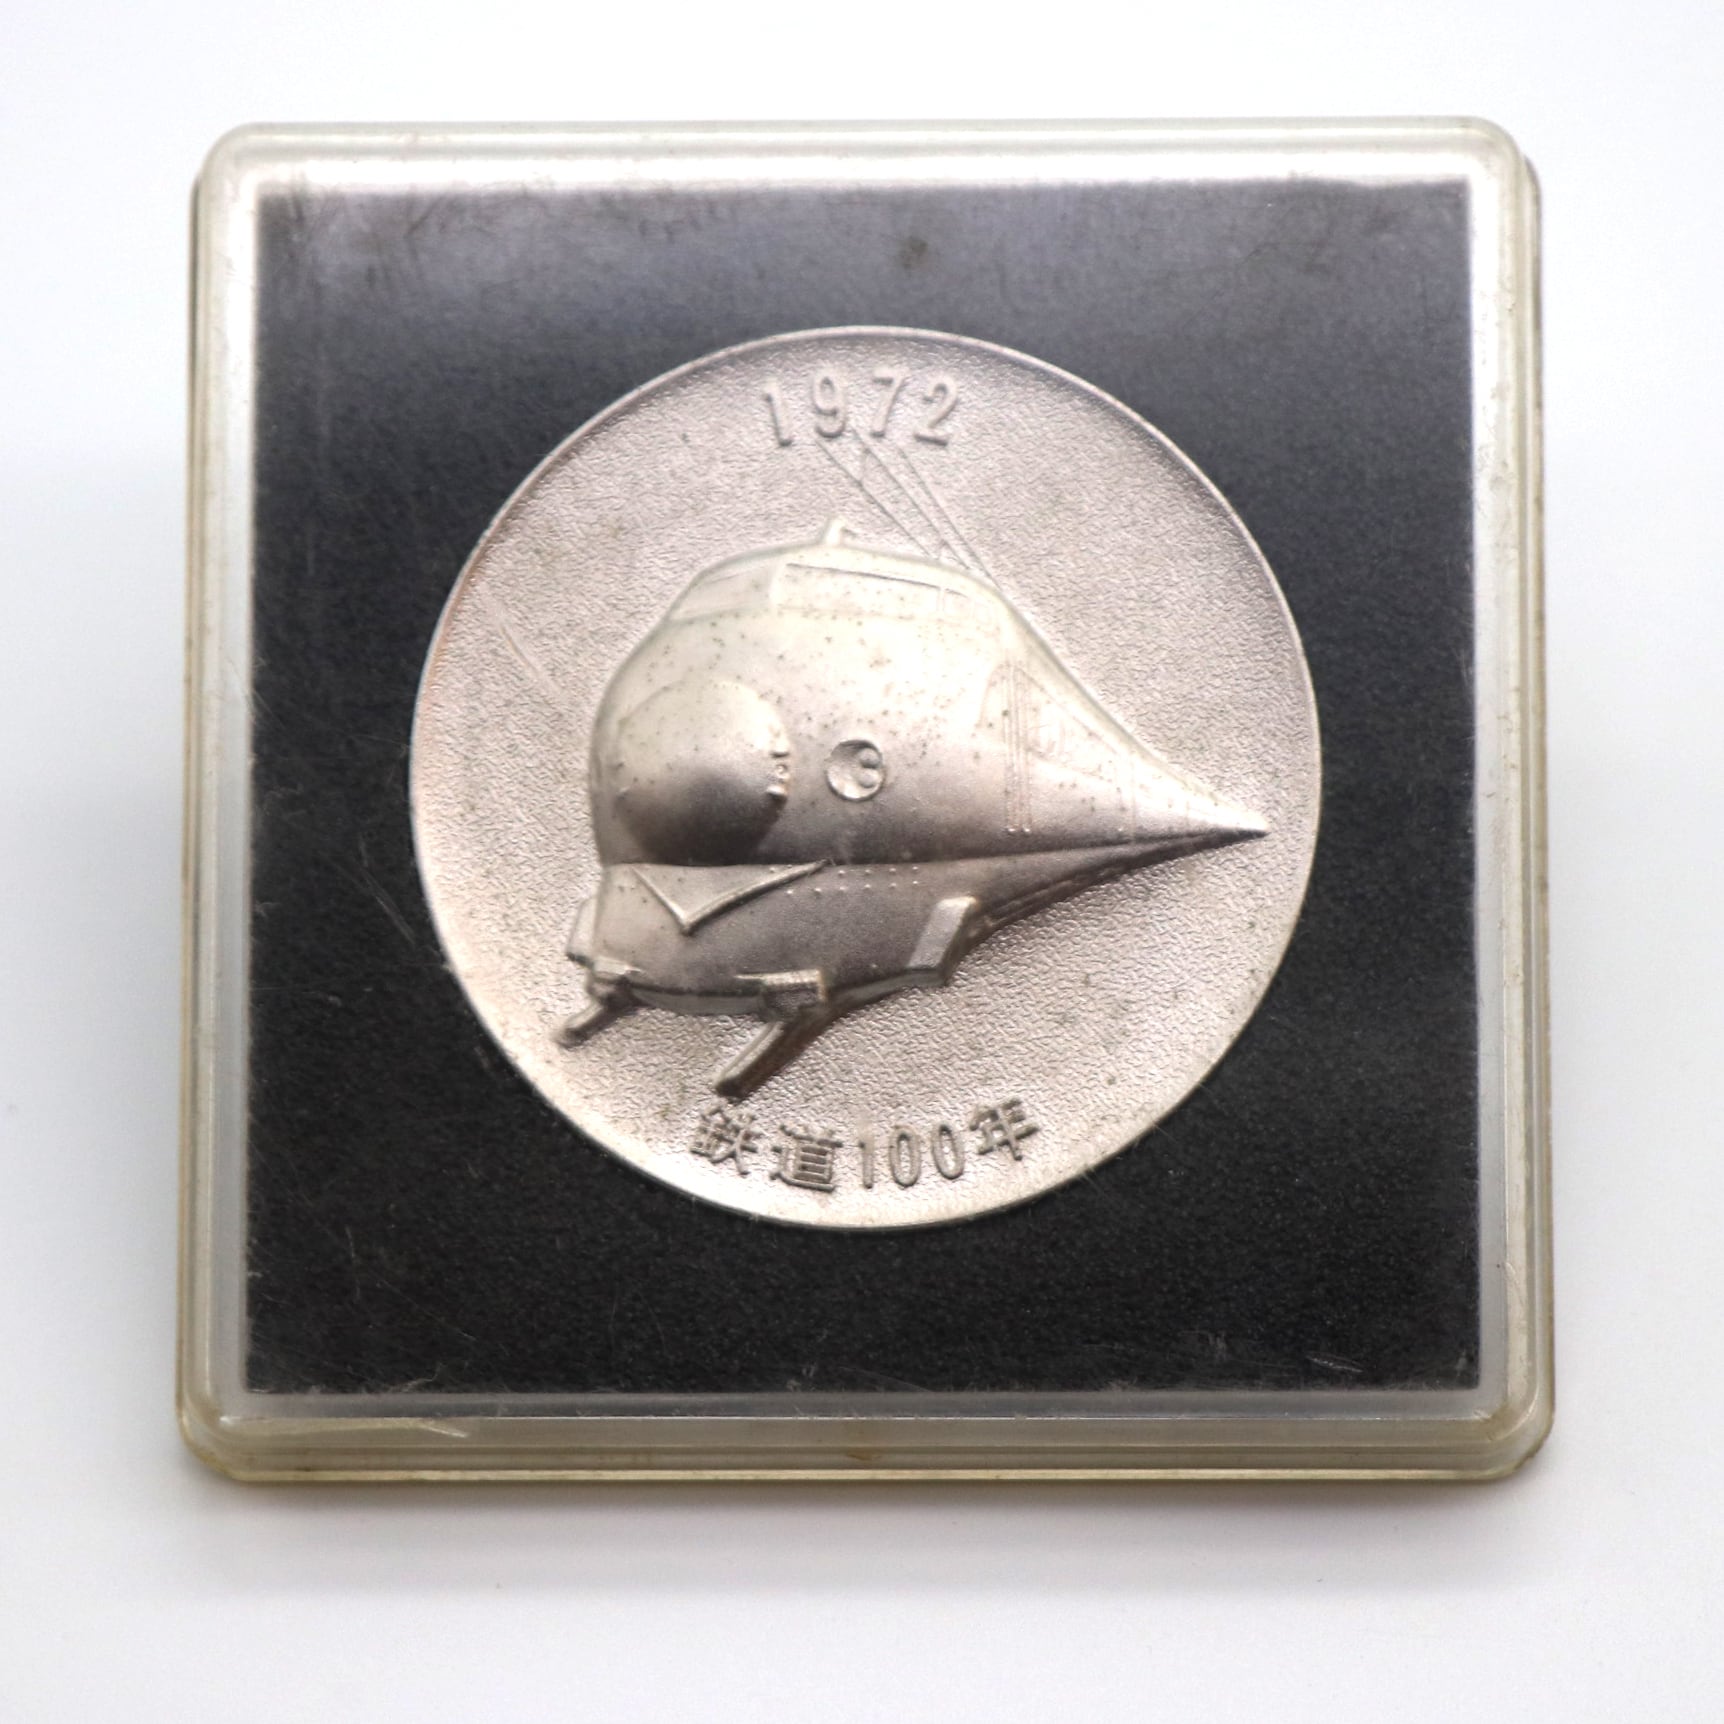 鉄道１００年記念メダル・日本国有鉄道・1972年・記念硬貨・限定品・コレクション・No.200926-060・梱包サイズ60  リサイクルショップ宝さがし